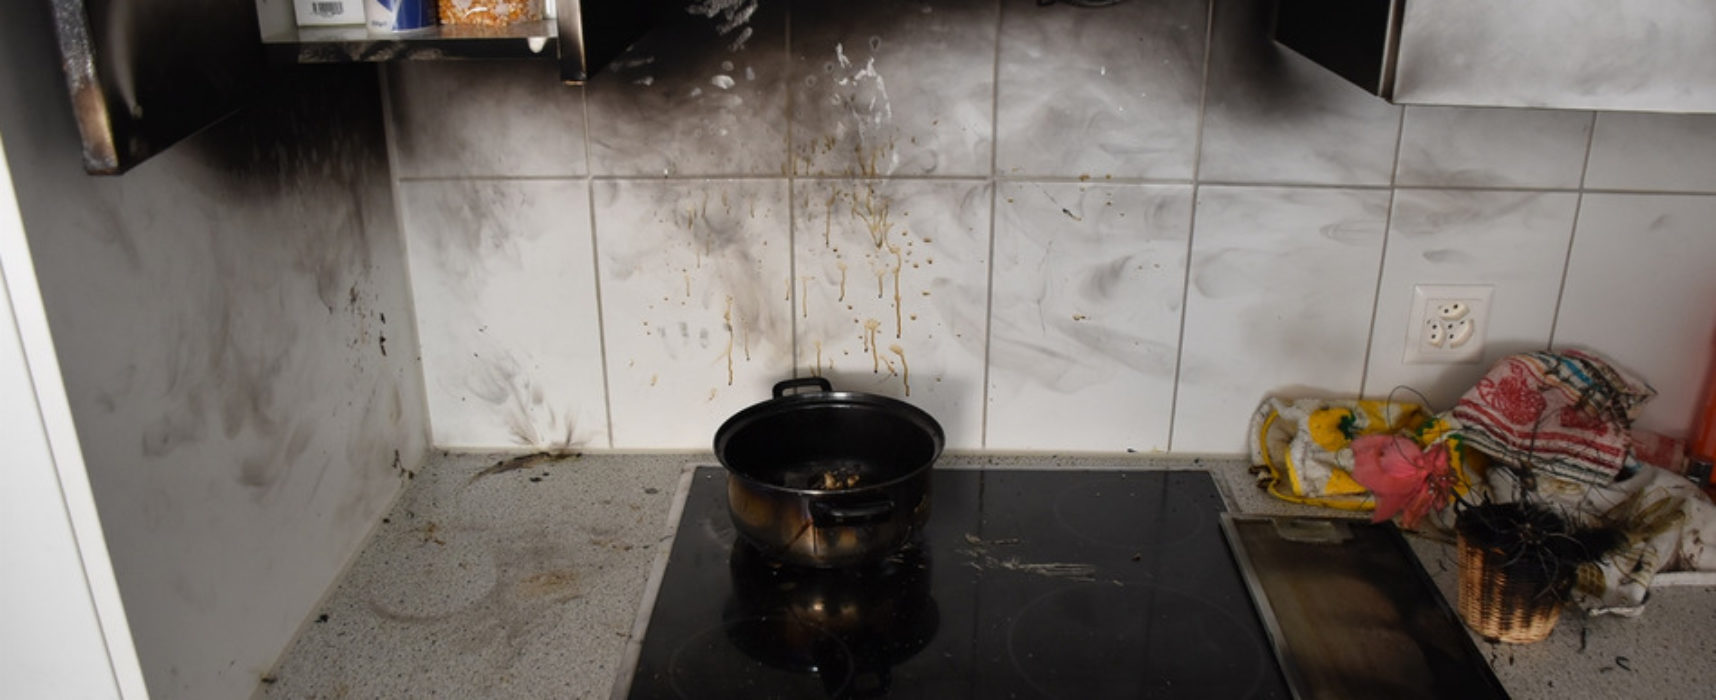 Küchenbrand in Thusis: Brennendes Öl löst Feuerwehreinsatz aus